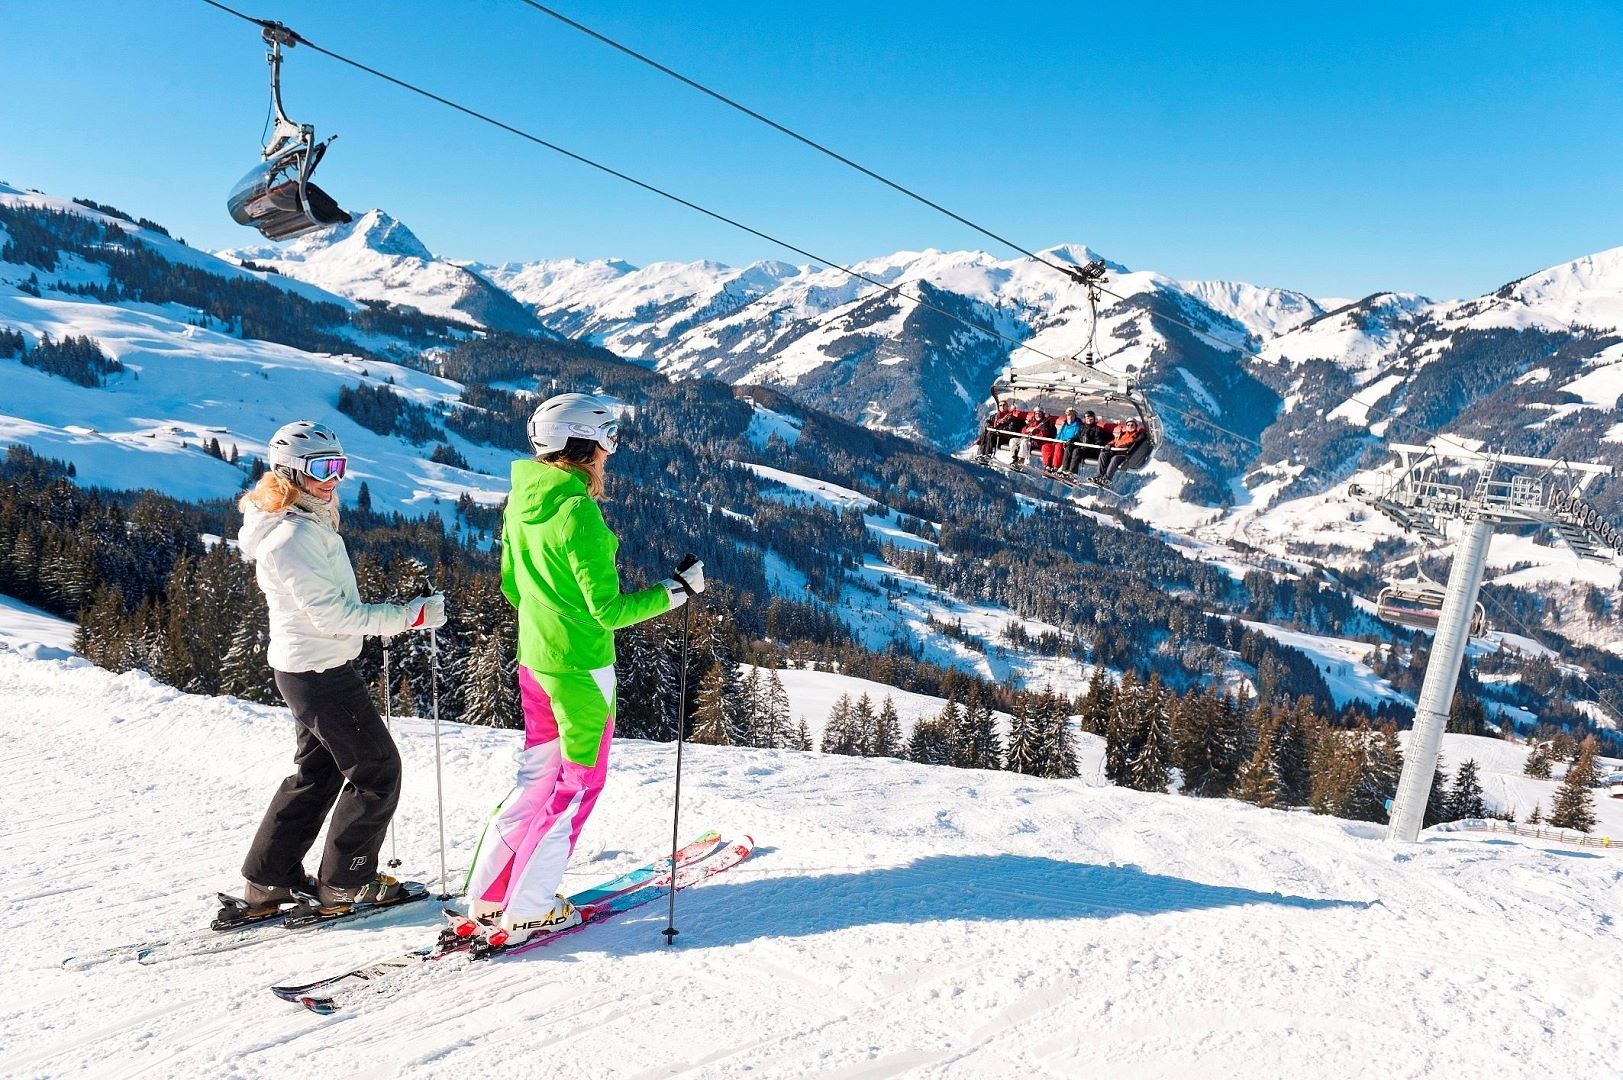 Покататься на горнолыжном курорте. Улудаг Турция горнолыжный курорт. Горнолыжный курорт лыжники Австрия. Катание на горных лыжах.